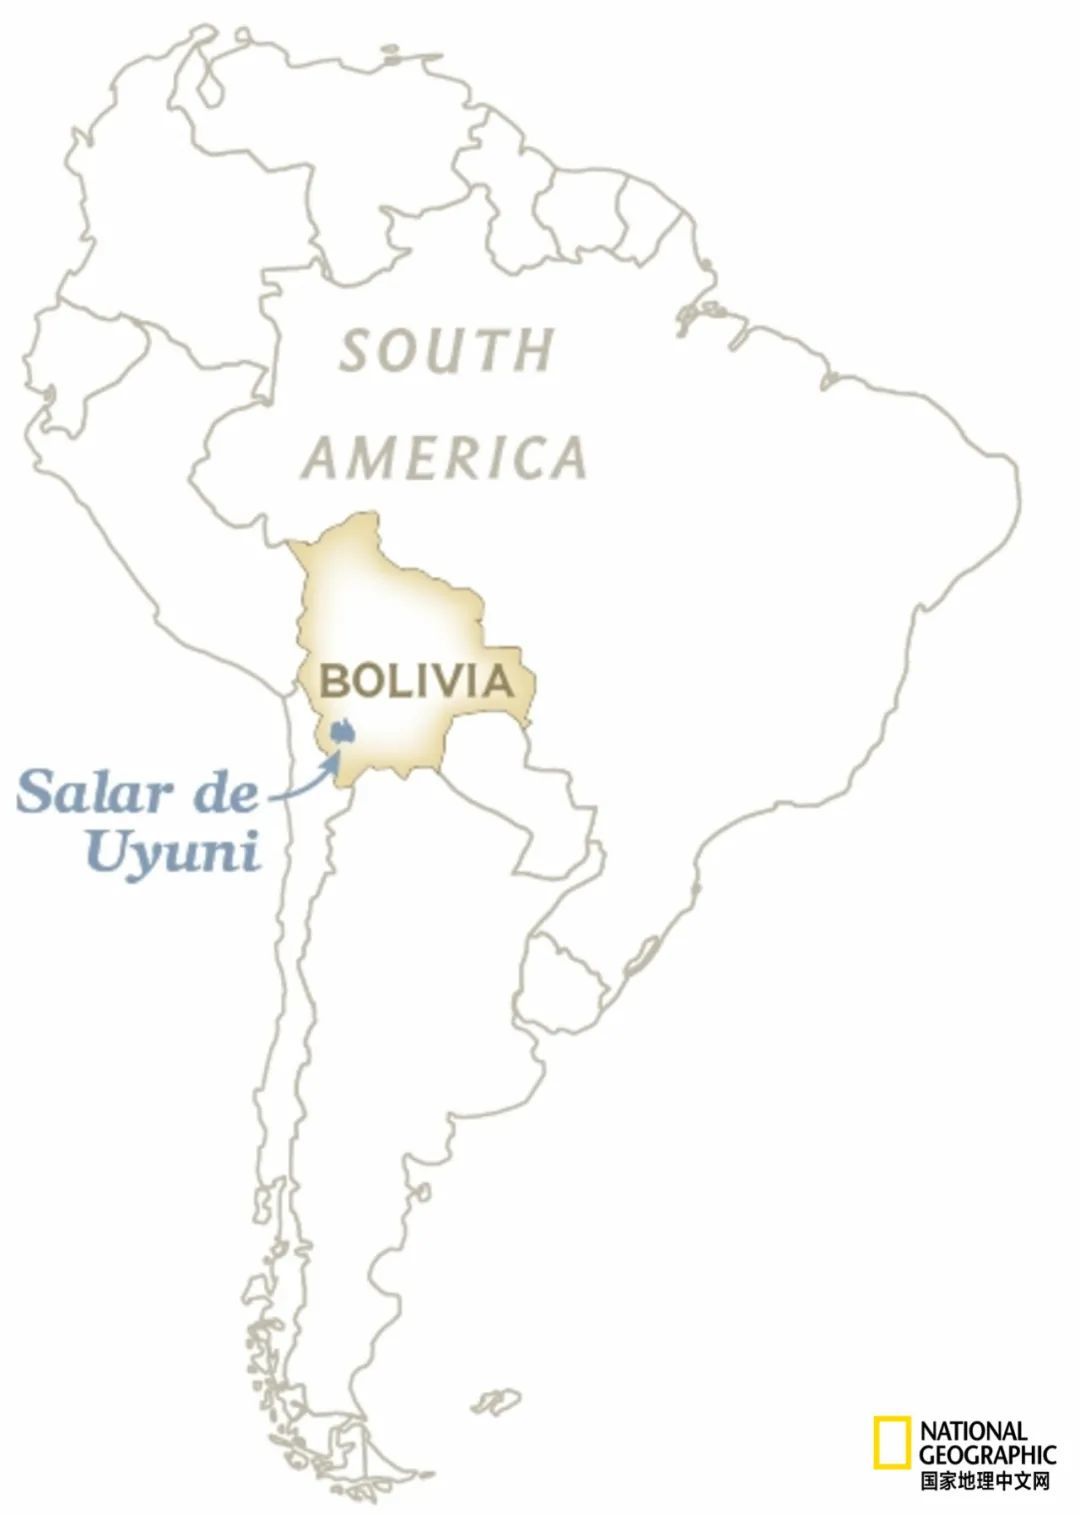 南美洲玻利维亚以及该国著名的乌尤尼盐沼所在位置